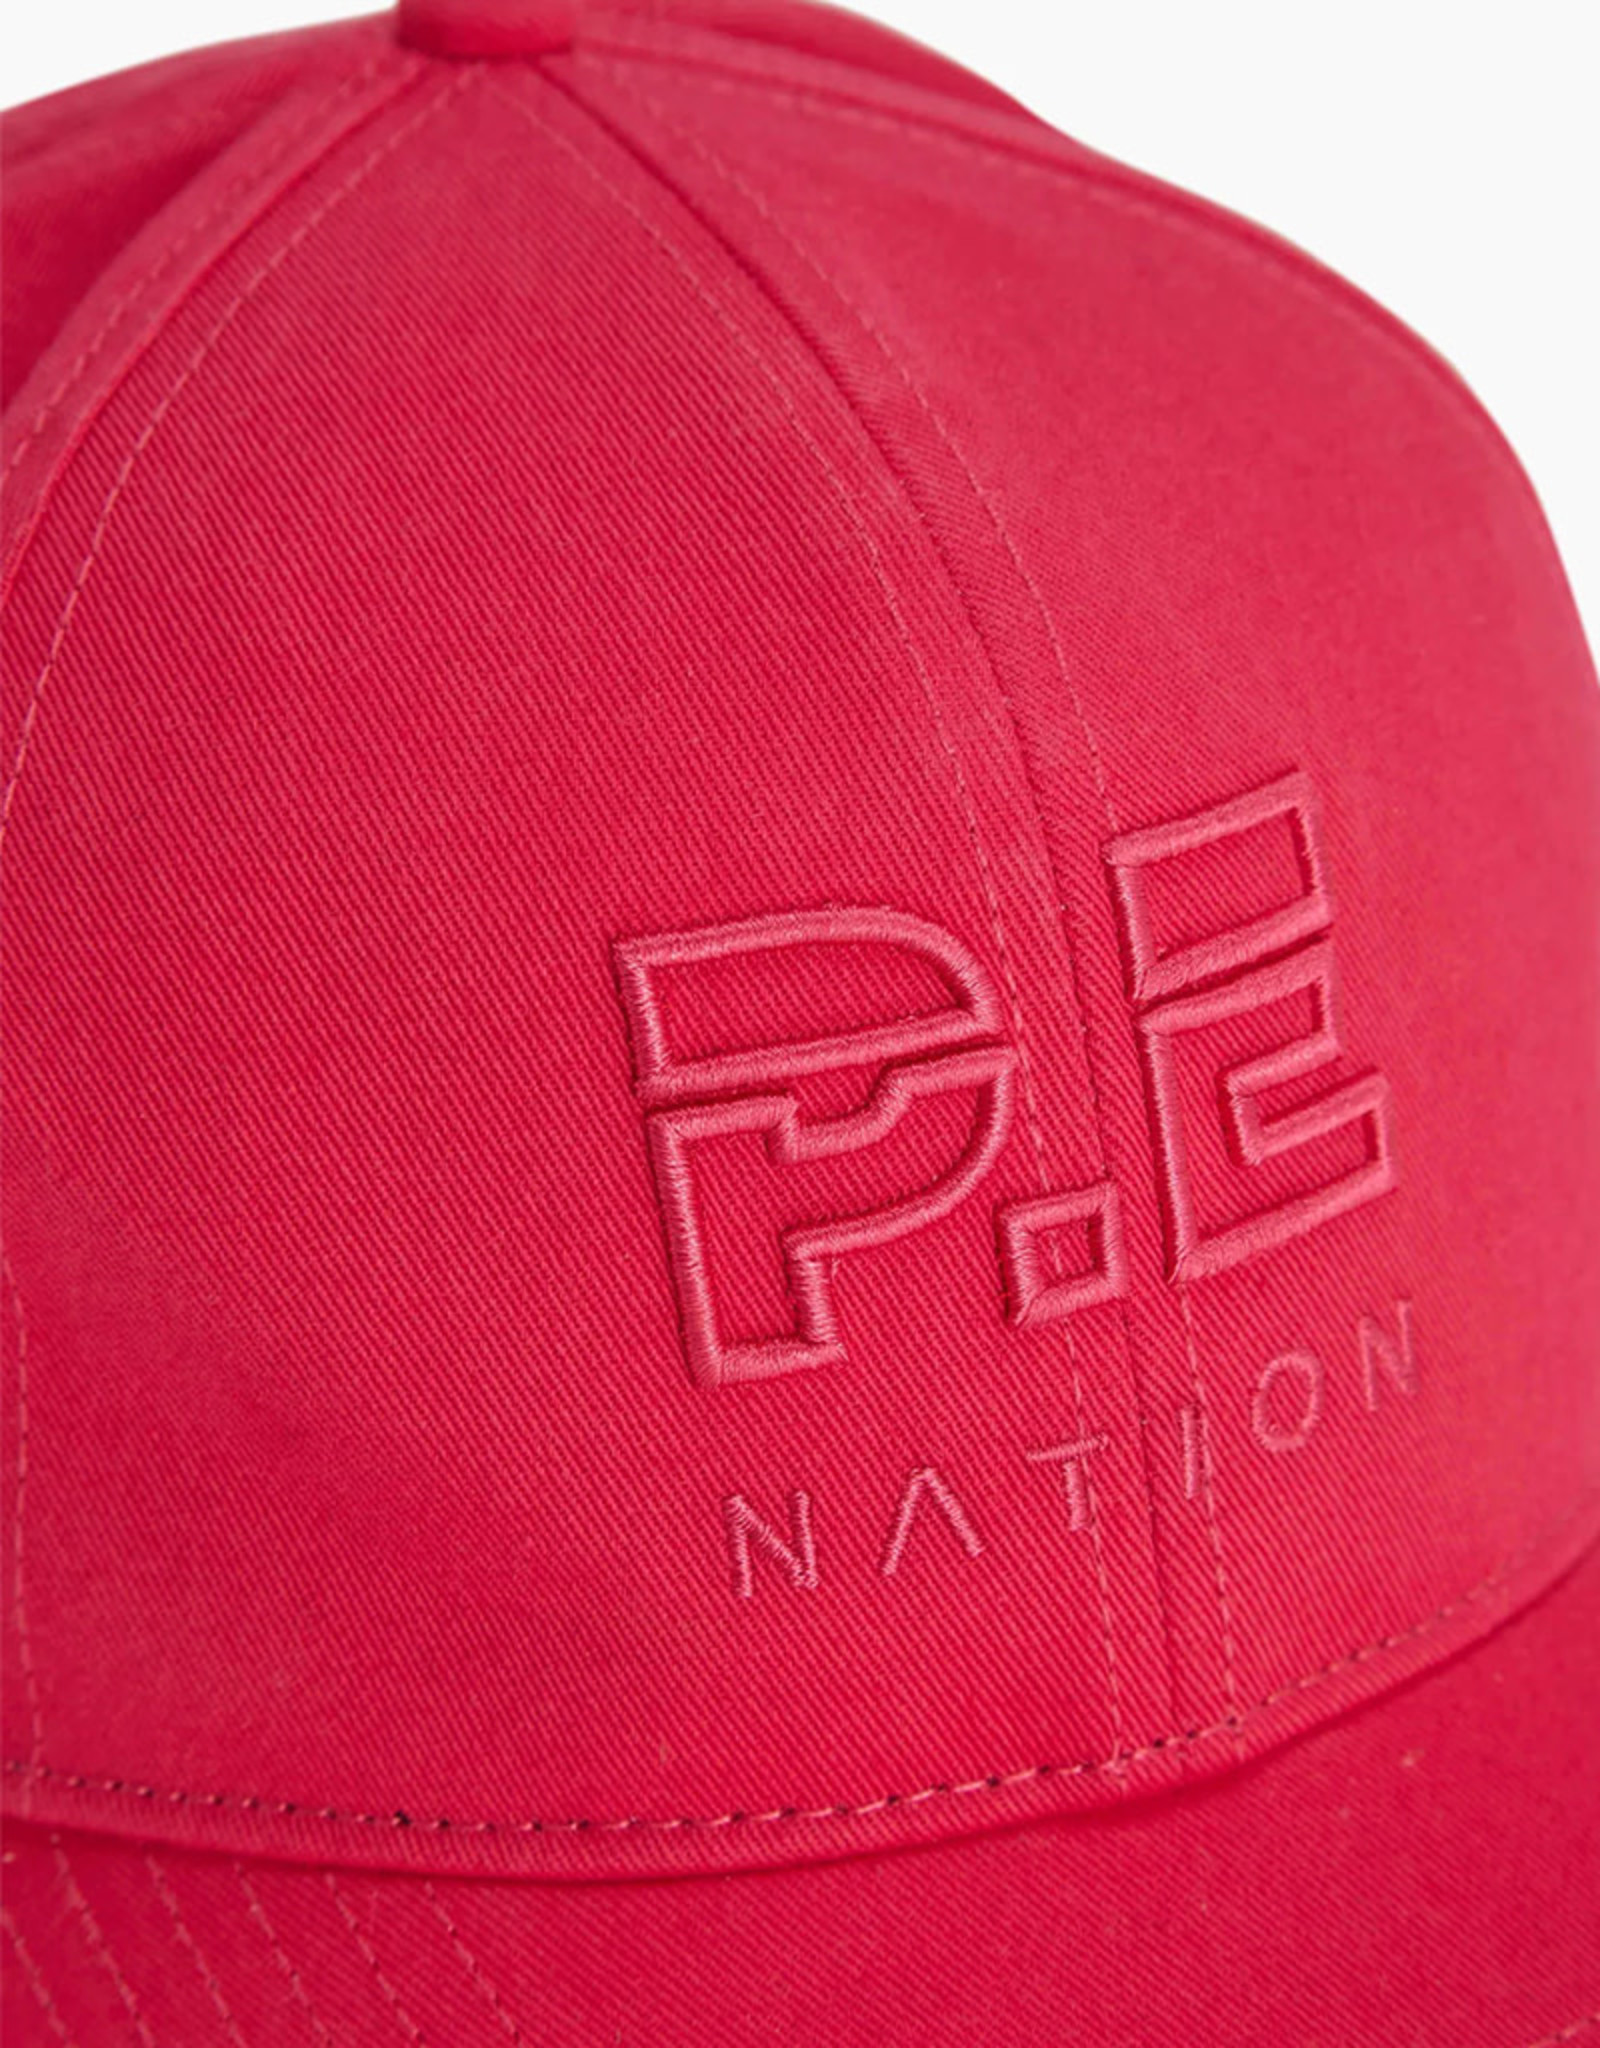 PE NATION DEFINITION CAP